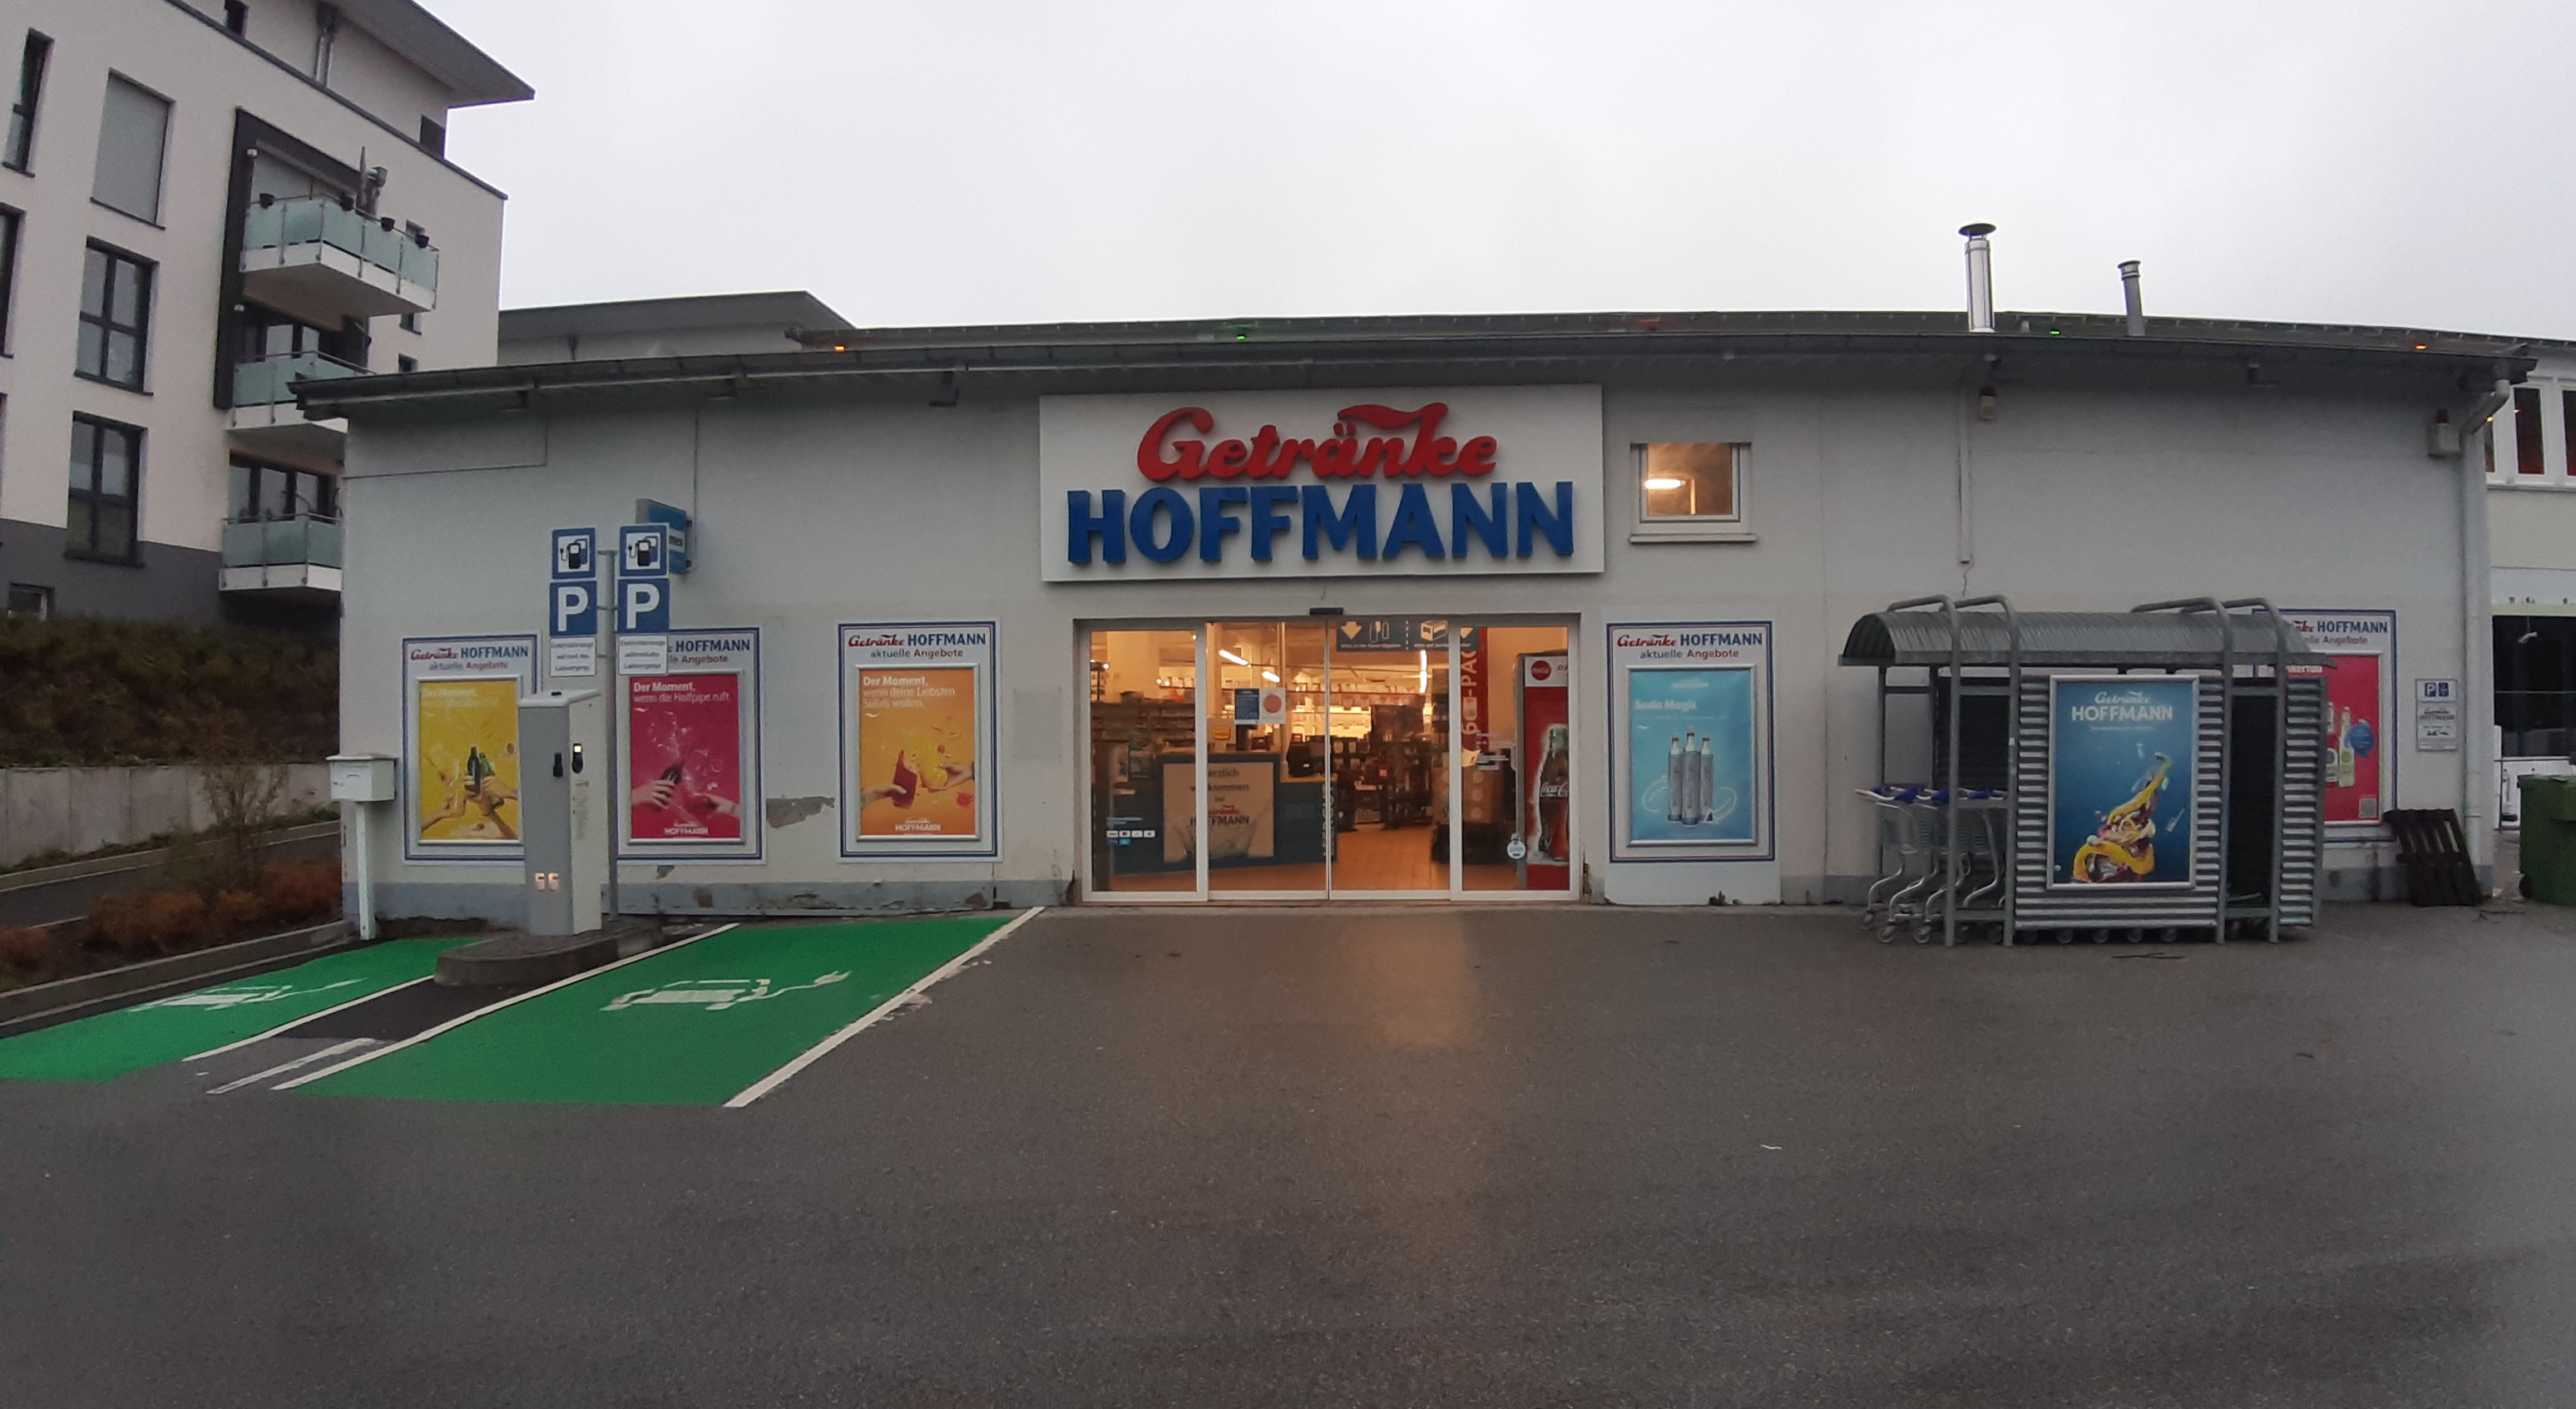 Bild 1 Getränke Hoffmann in Meinerzhagen